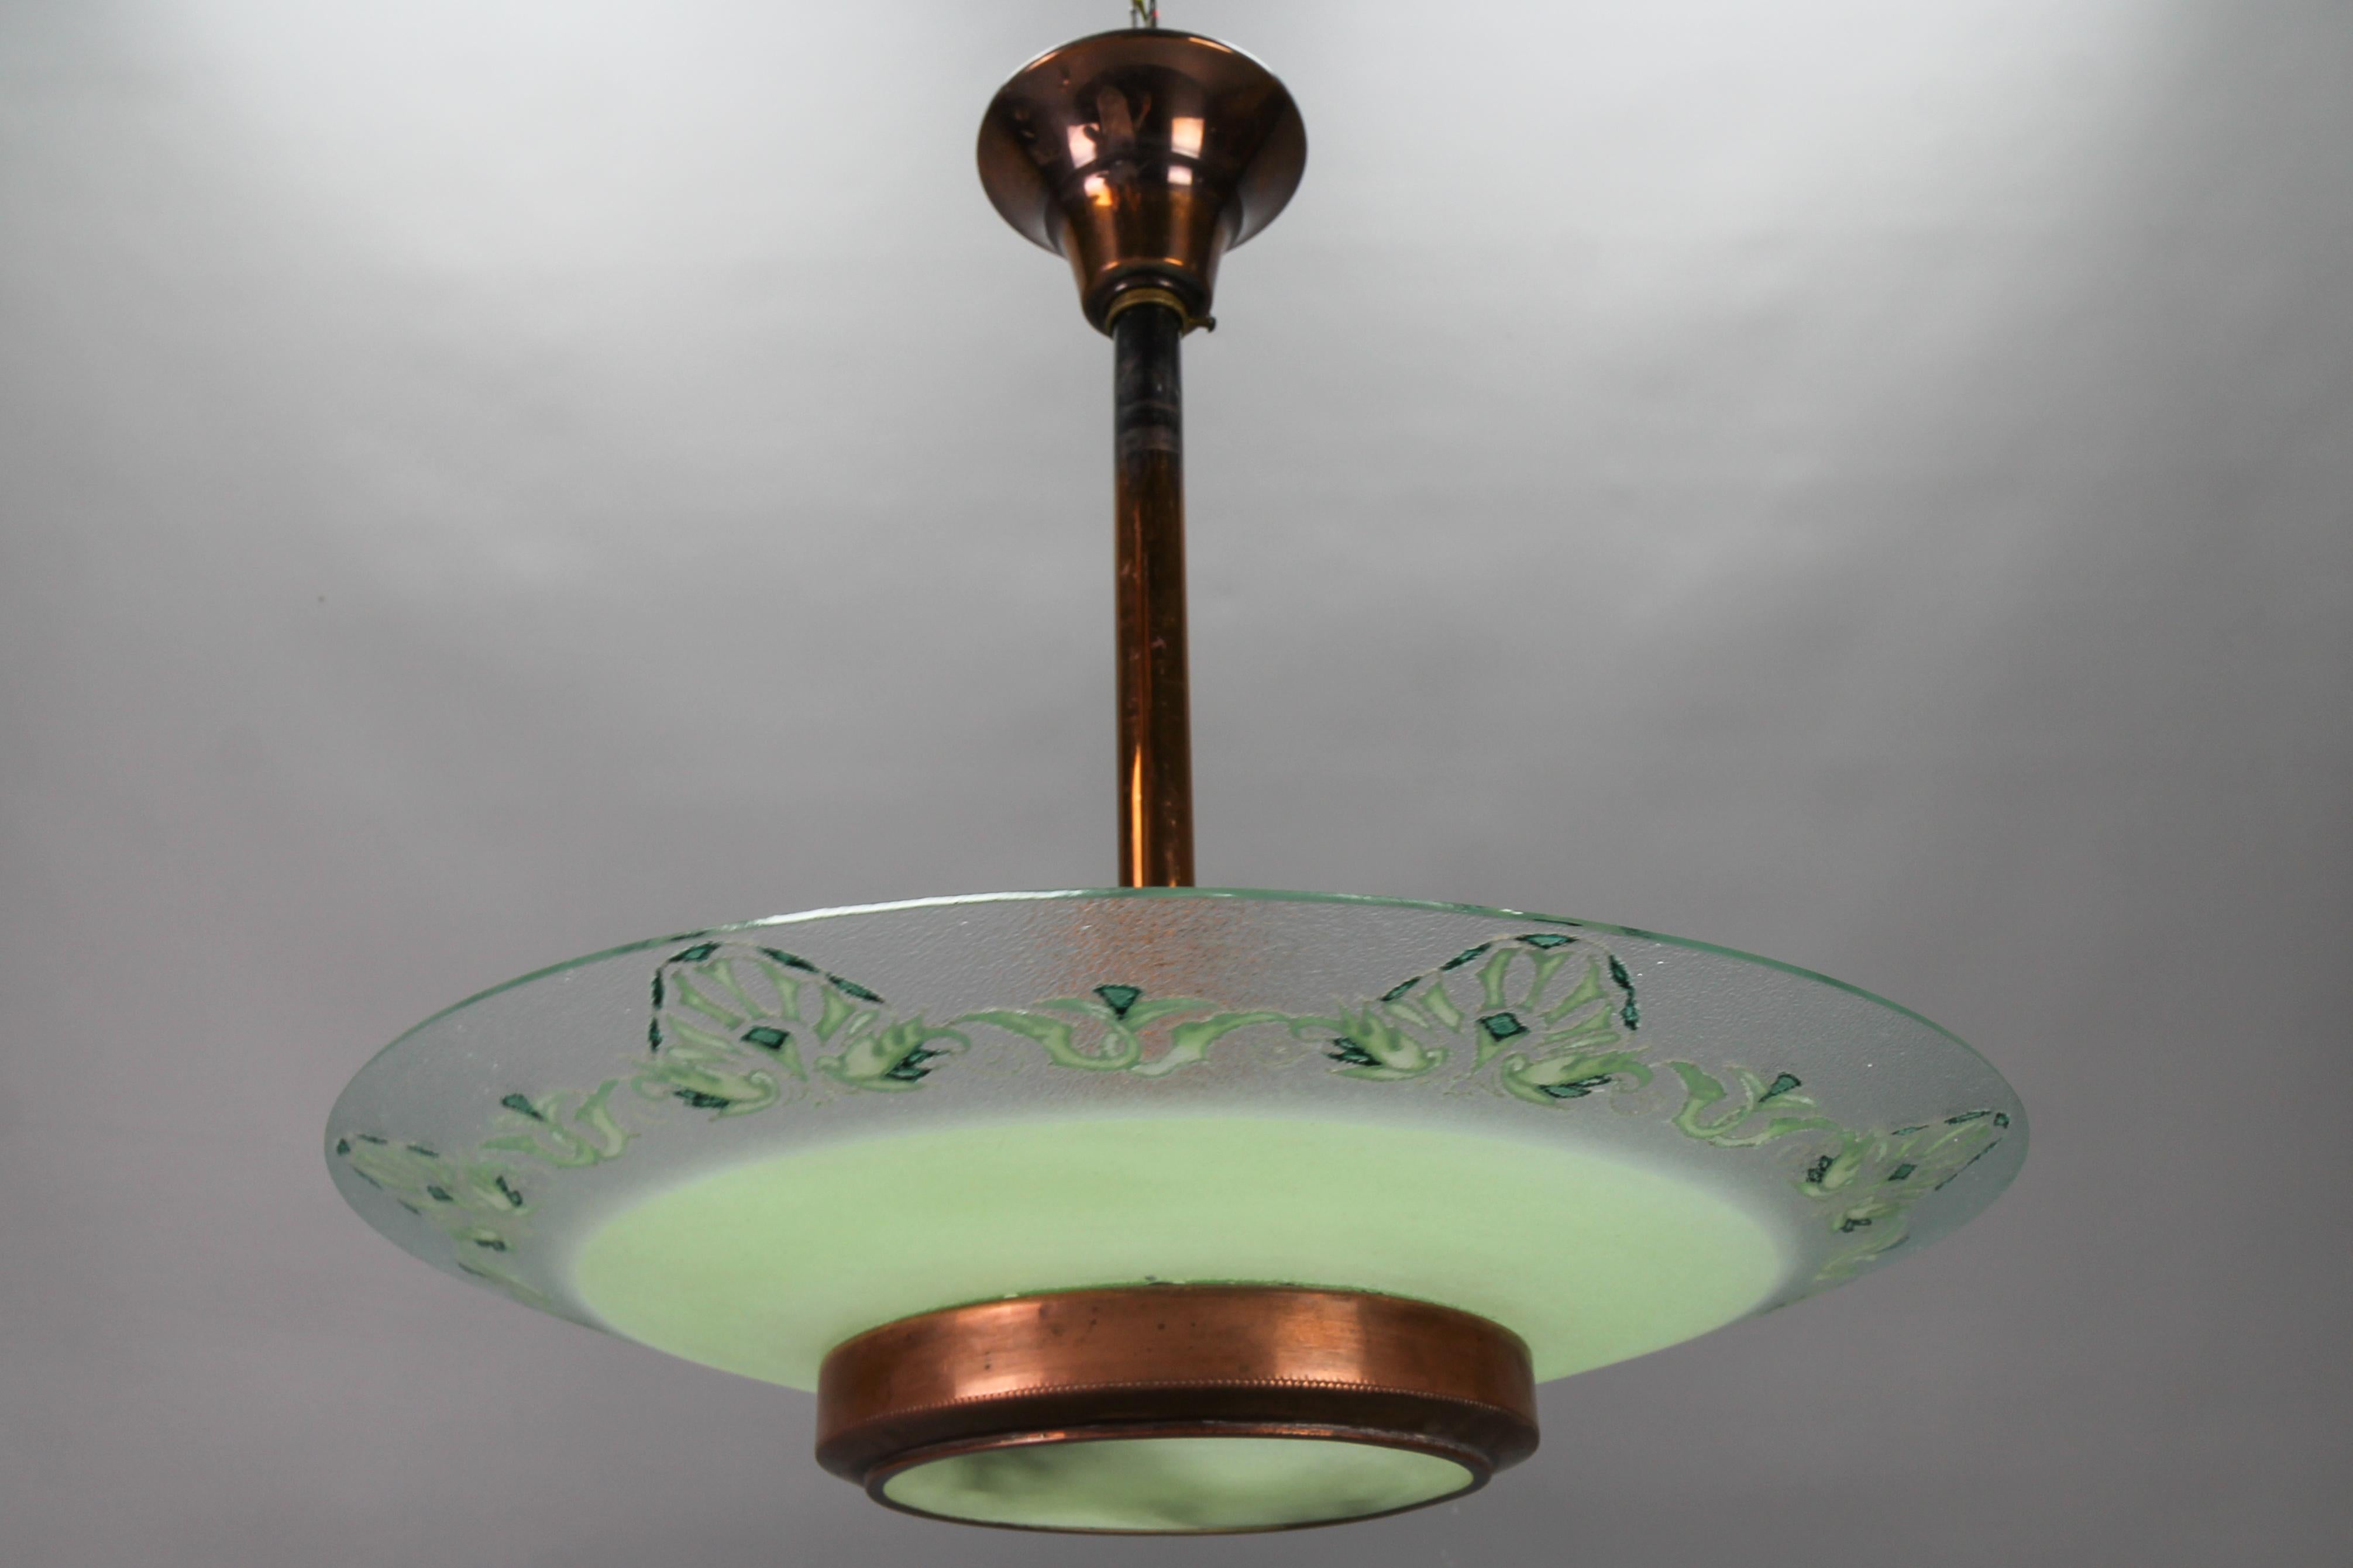 Französischer Art-Déco-Kronleuchter aus grünem Glas und Kupfer von Loys Lucha aus den 1930er Jahren.
Diese schöne Pendelleuchte hat einen leicht strukturierten Lampenschirm aus grünem und klarem Glas mit stilisierten Blumenmotiven auf dem klaren